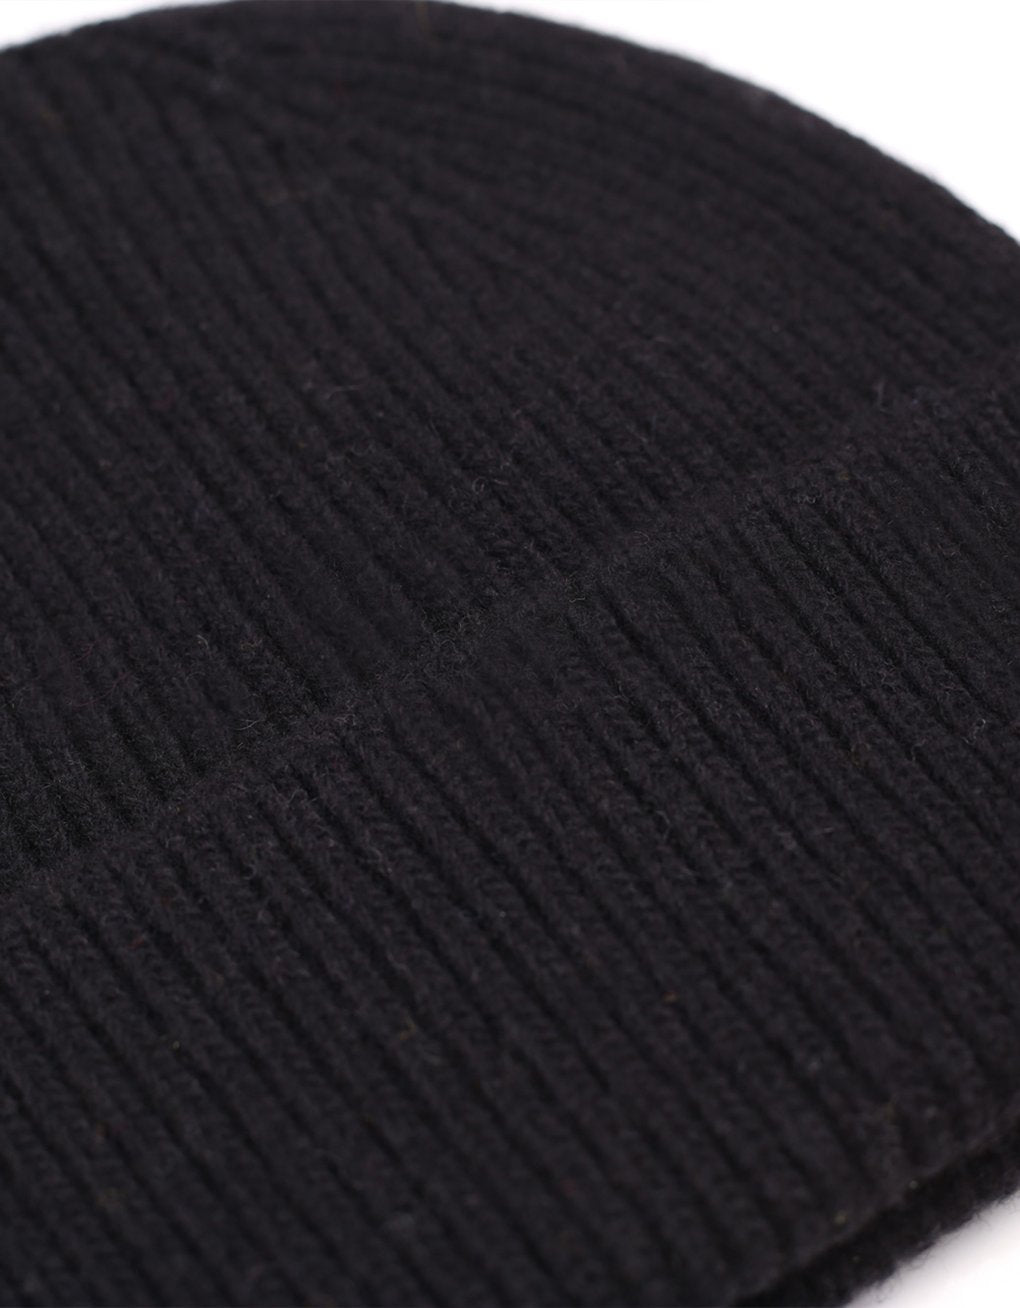 Merino wool beanie in deep black